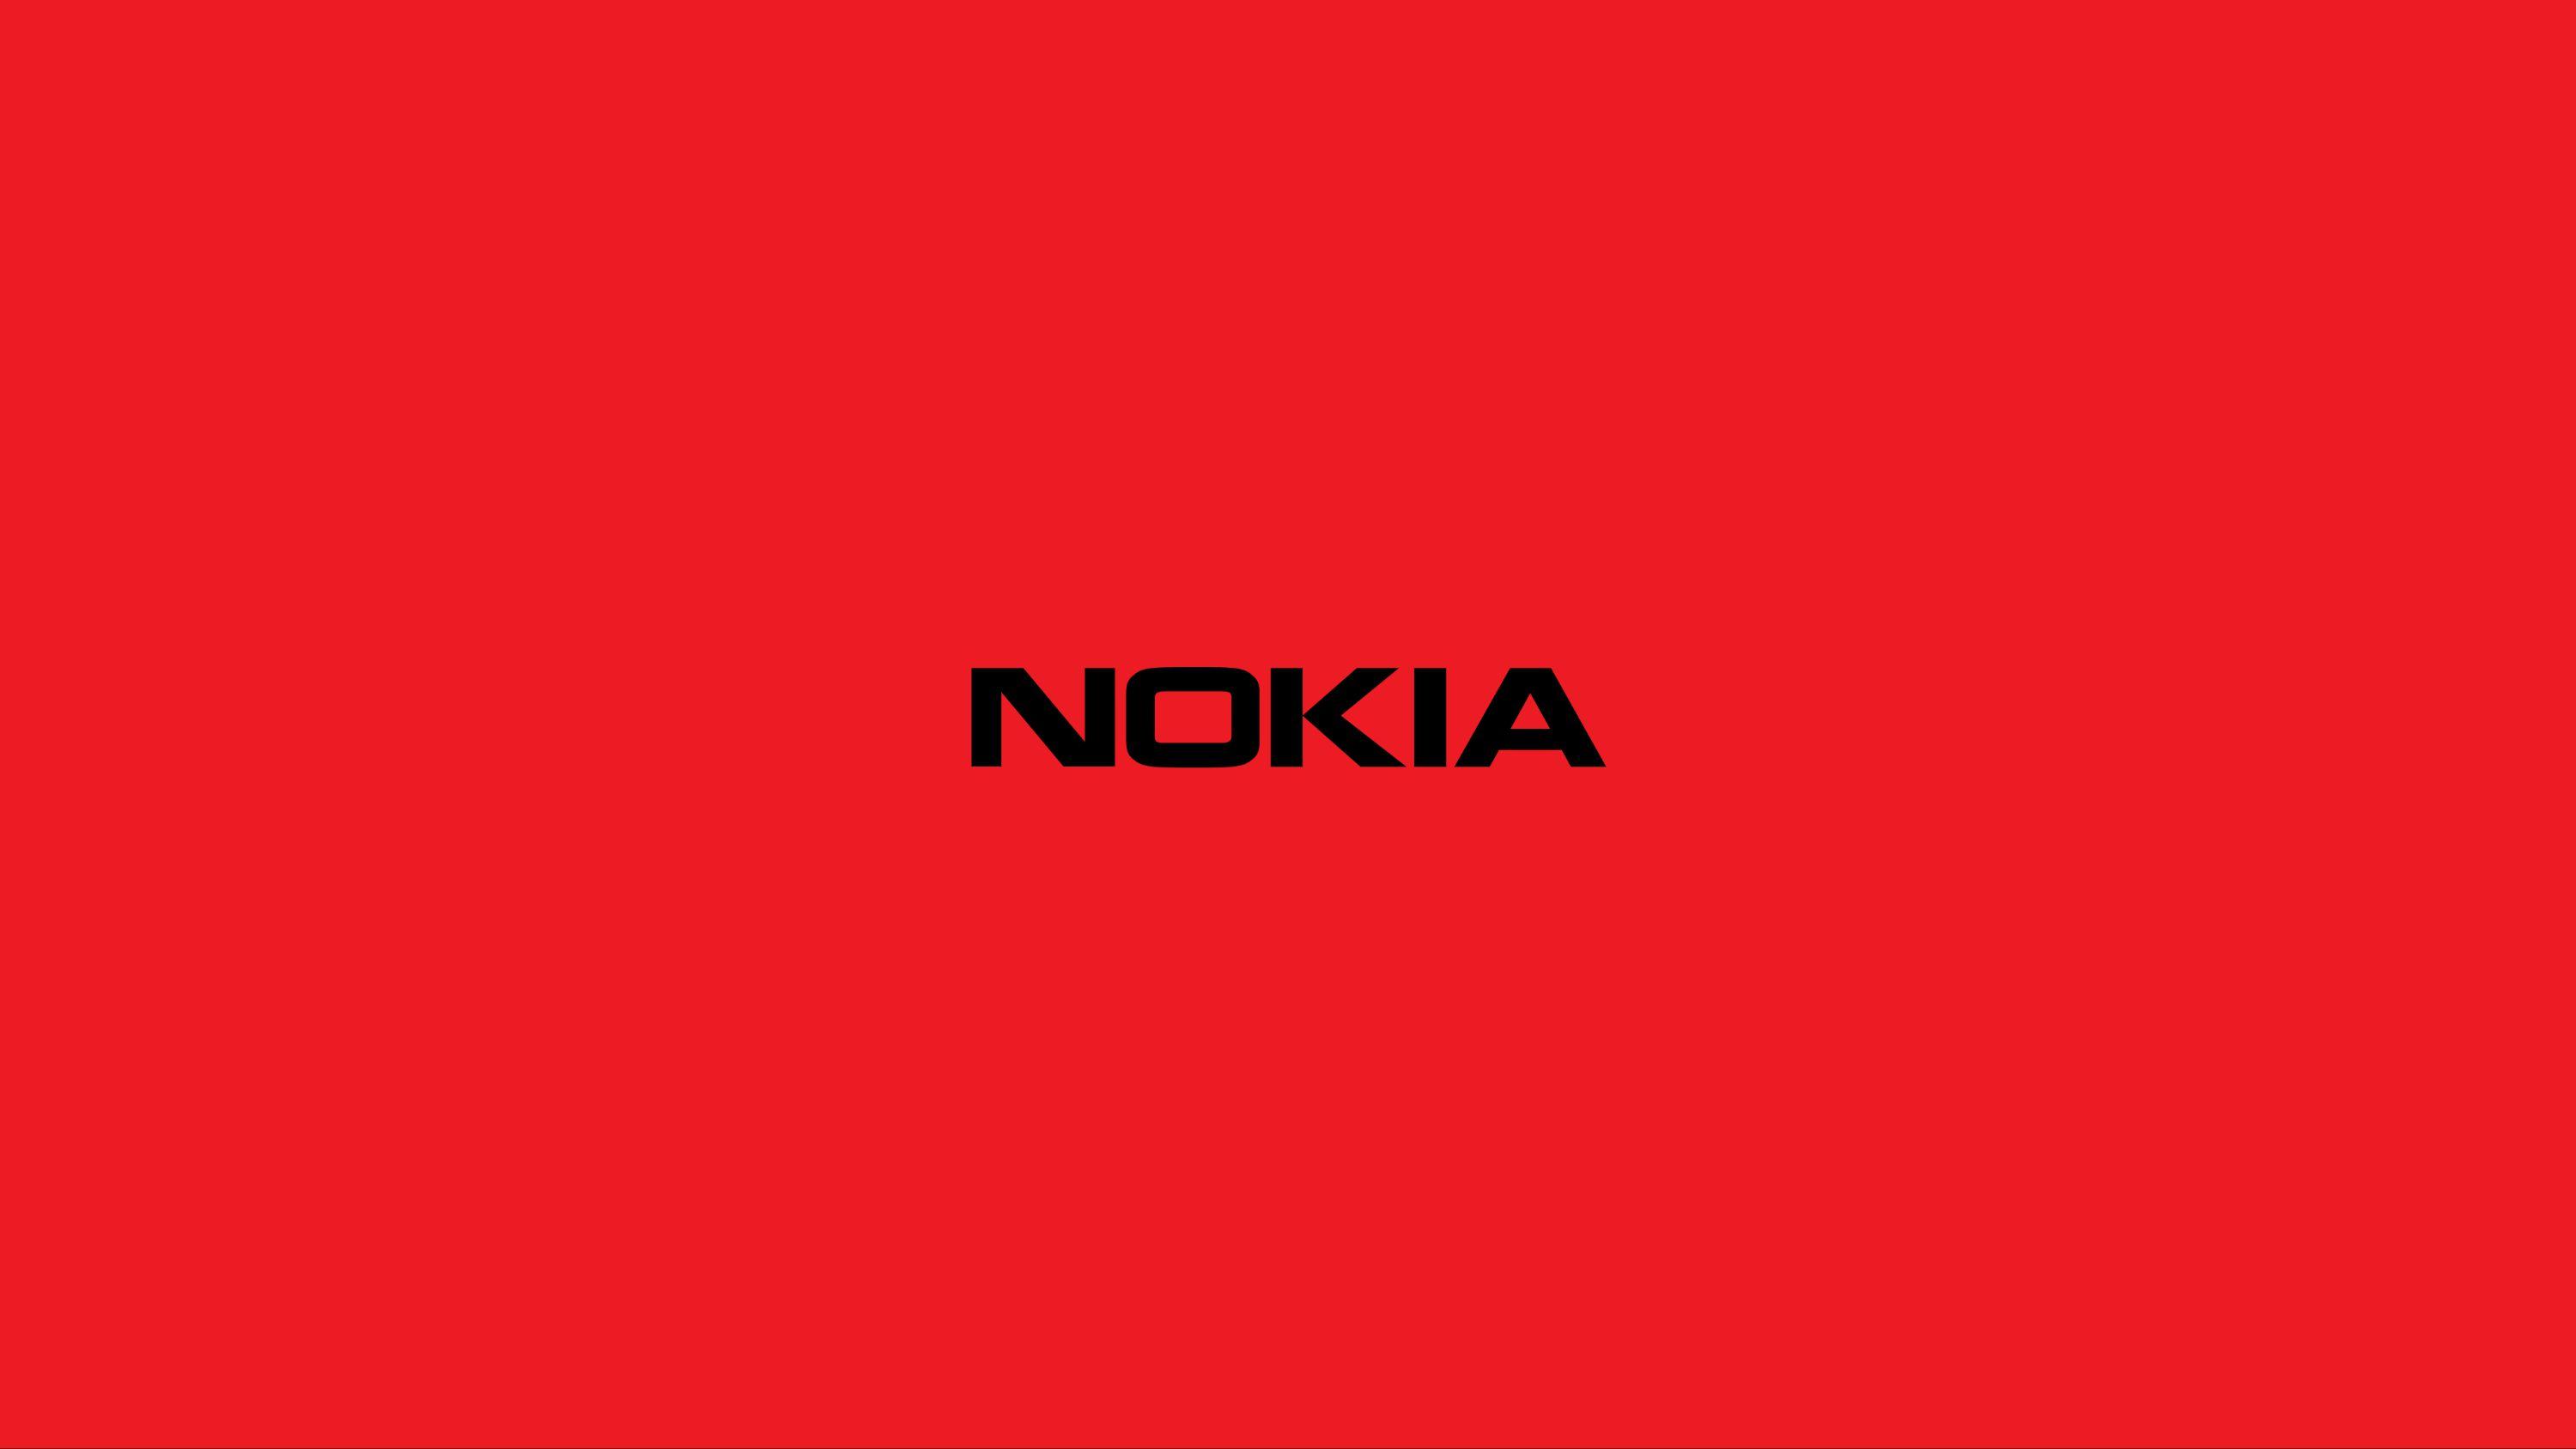 iDesign  Nokia đánh đổi logo mang tính biểu tượng của mình để trông ít di  động hơn và kỹ thuật số hơn